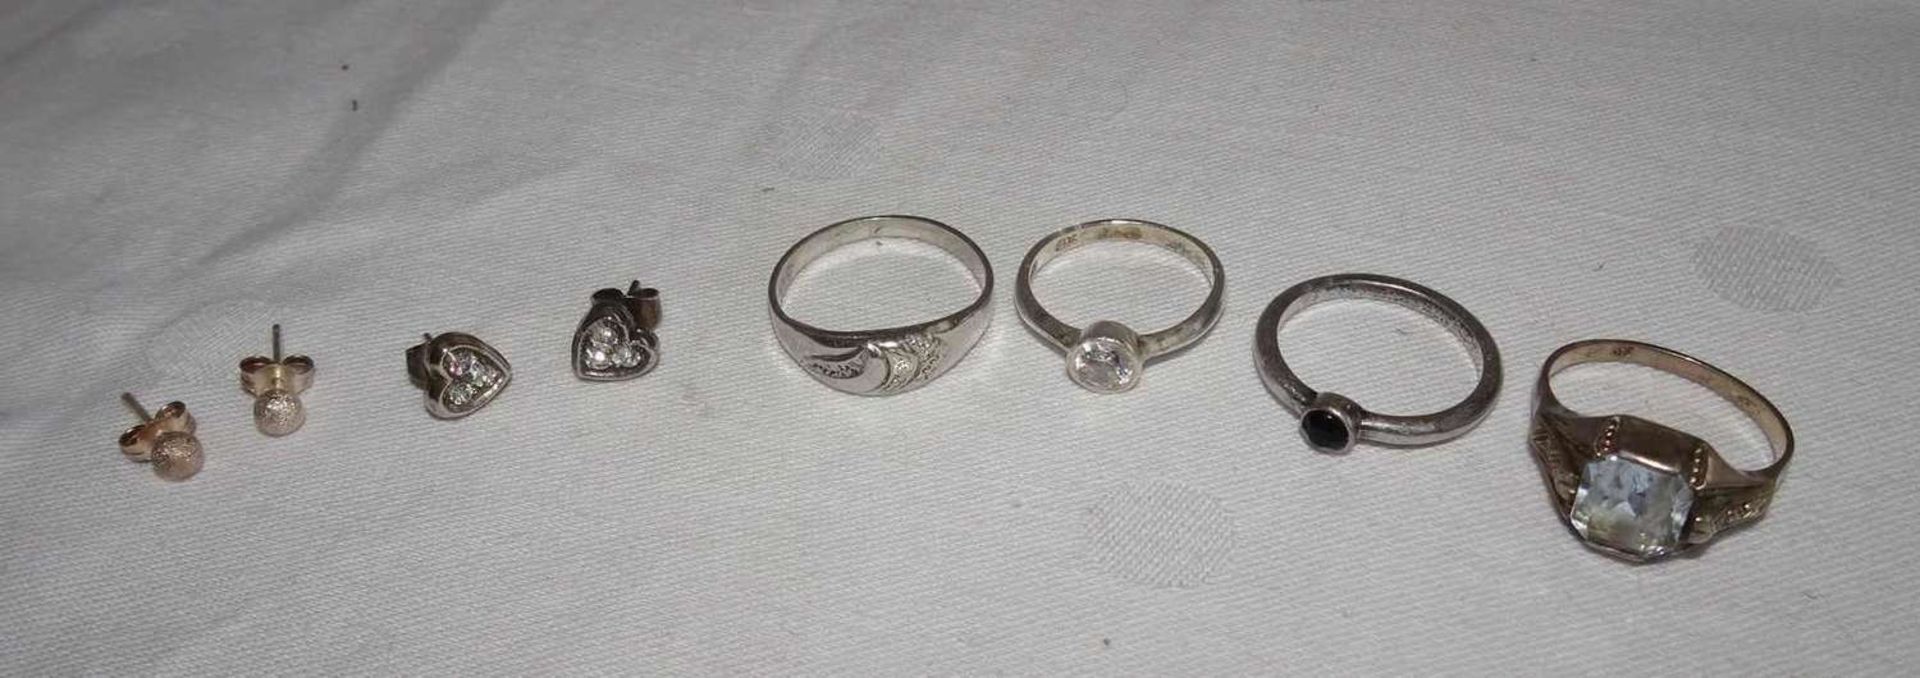 Lot Silberschmuck, dabei 4 Ringe und 2 Paar Ohrringe. Gewicht ca. 12,8 gr.Lot of silver jewelry,